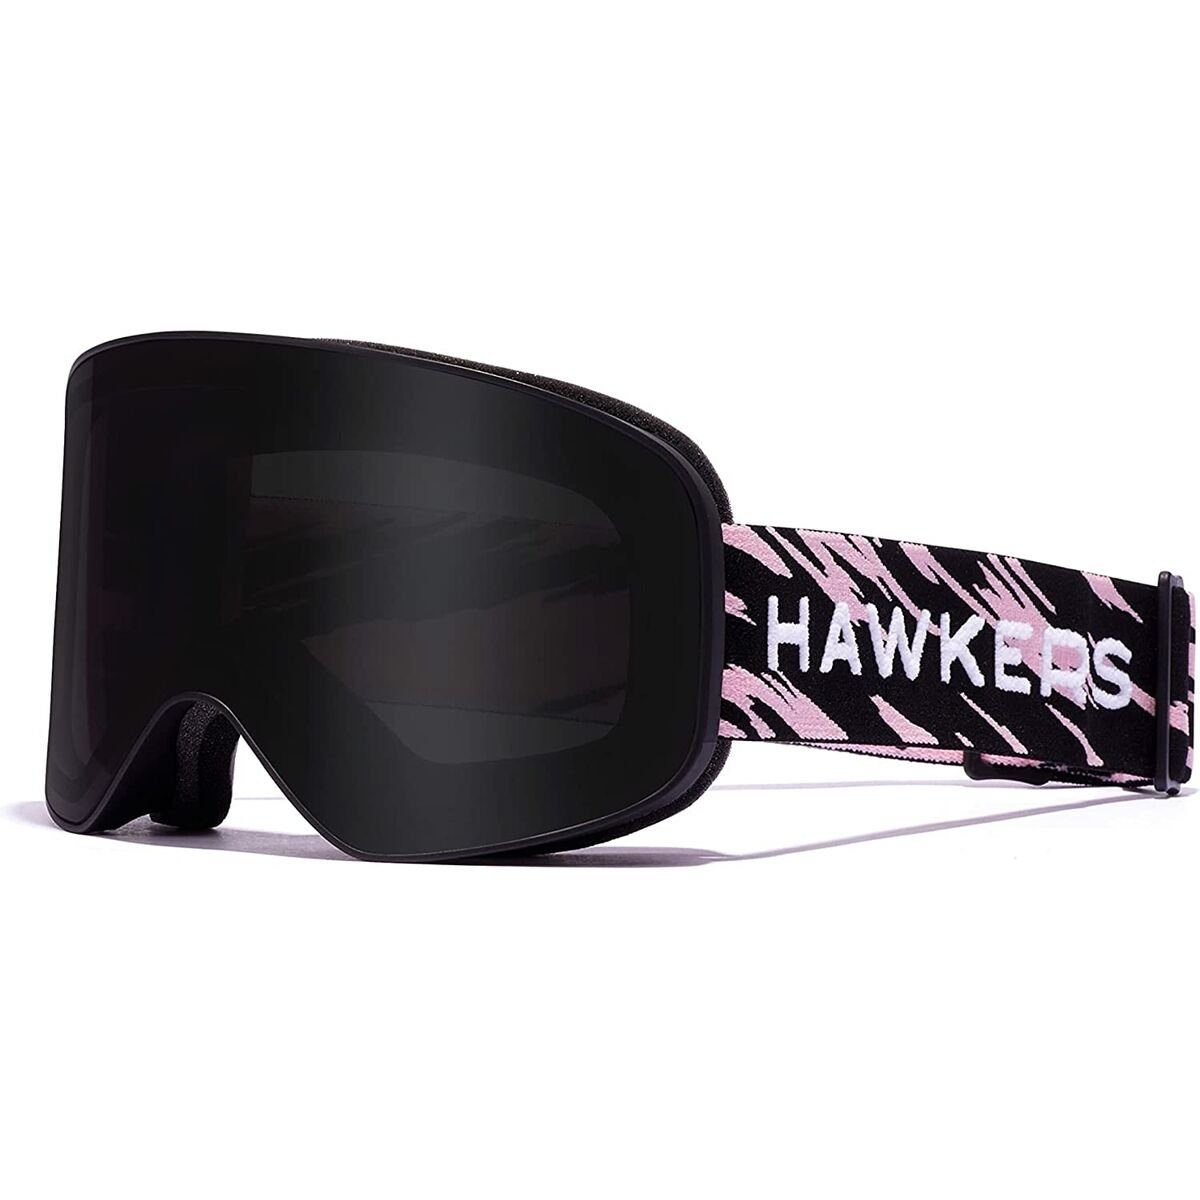 Hawkers Skibrille | Brillen